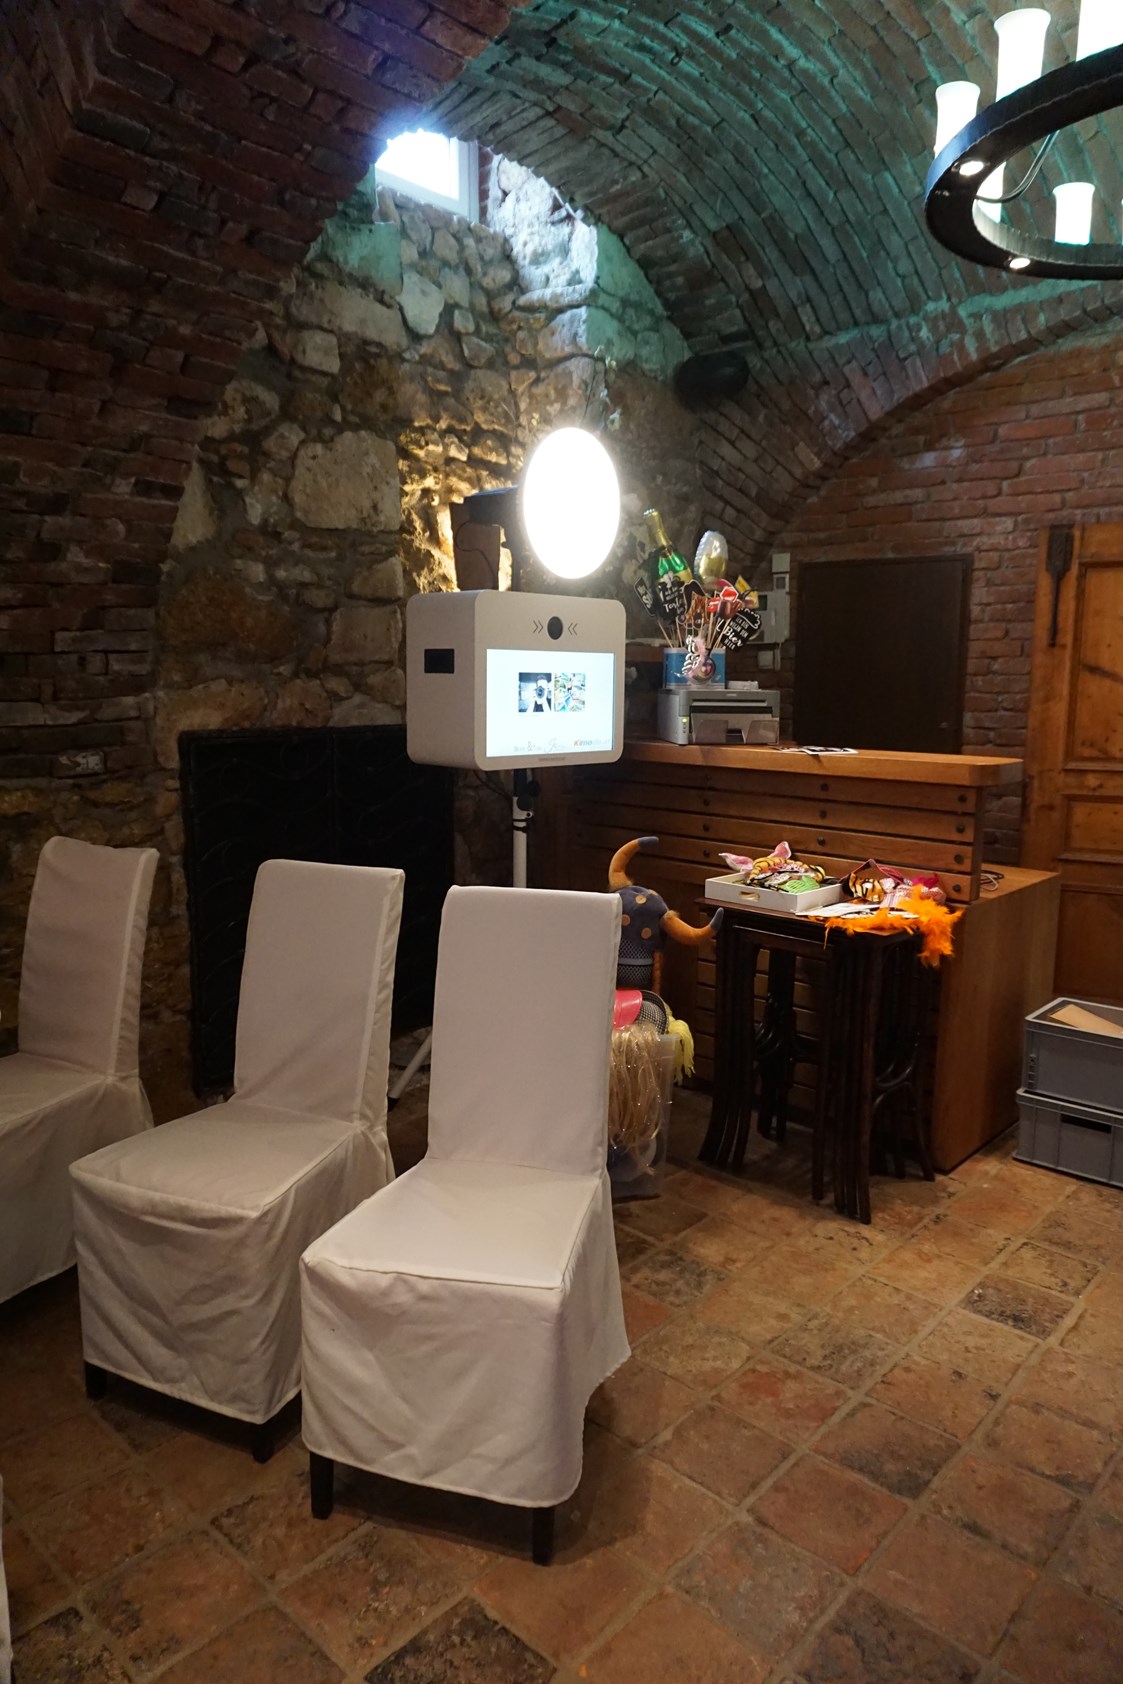 Hochzeitsfotograf: Auch wenn wenig Platz zur Verfügung steht, findet eine Kimodo Fotobox ihren perfekten Platz. Hochzeit in Leibnitz 2019 - Kimodo Fotobox - Die unterhaltsamste Art ins Bild zu kommen. Besser als jedes Selfie ...